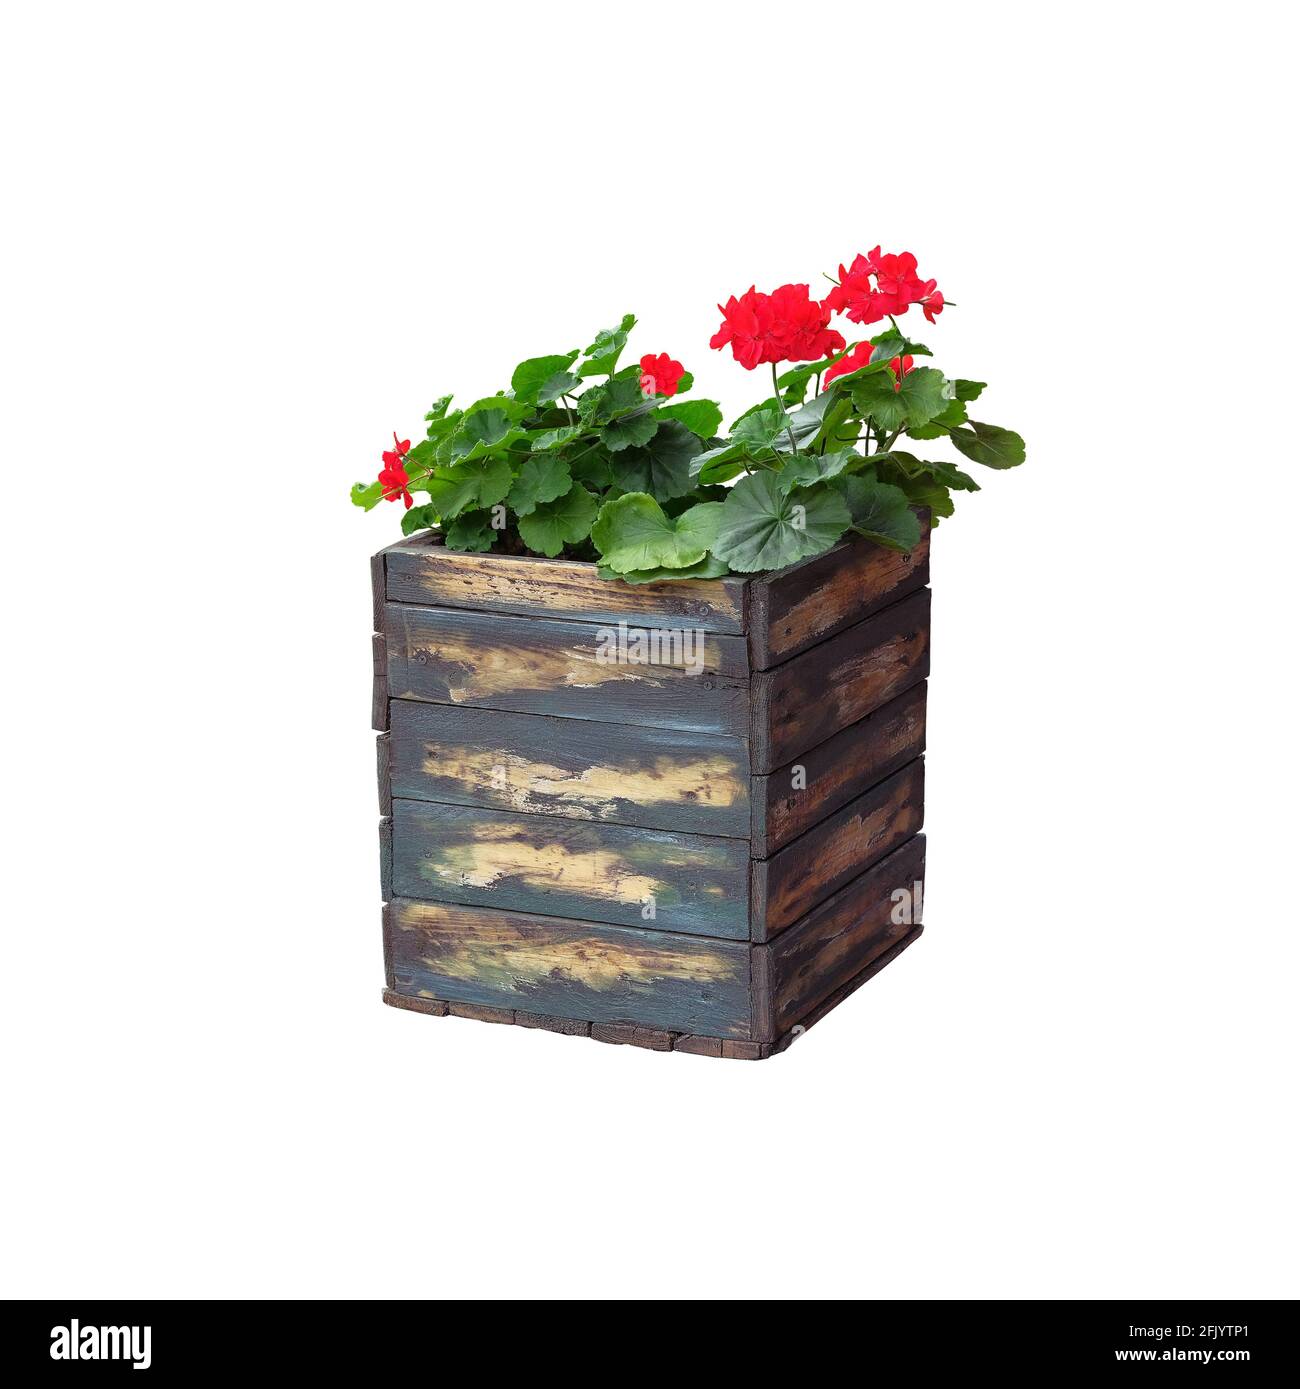 Topf mit Strauch blühender Pflanze für Landschaftsgestaltung. Geranium. Bush mit roten Blüten in Holzblumentopf, isoliert auf weißem Hintergrund. Stockfoto